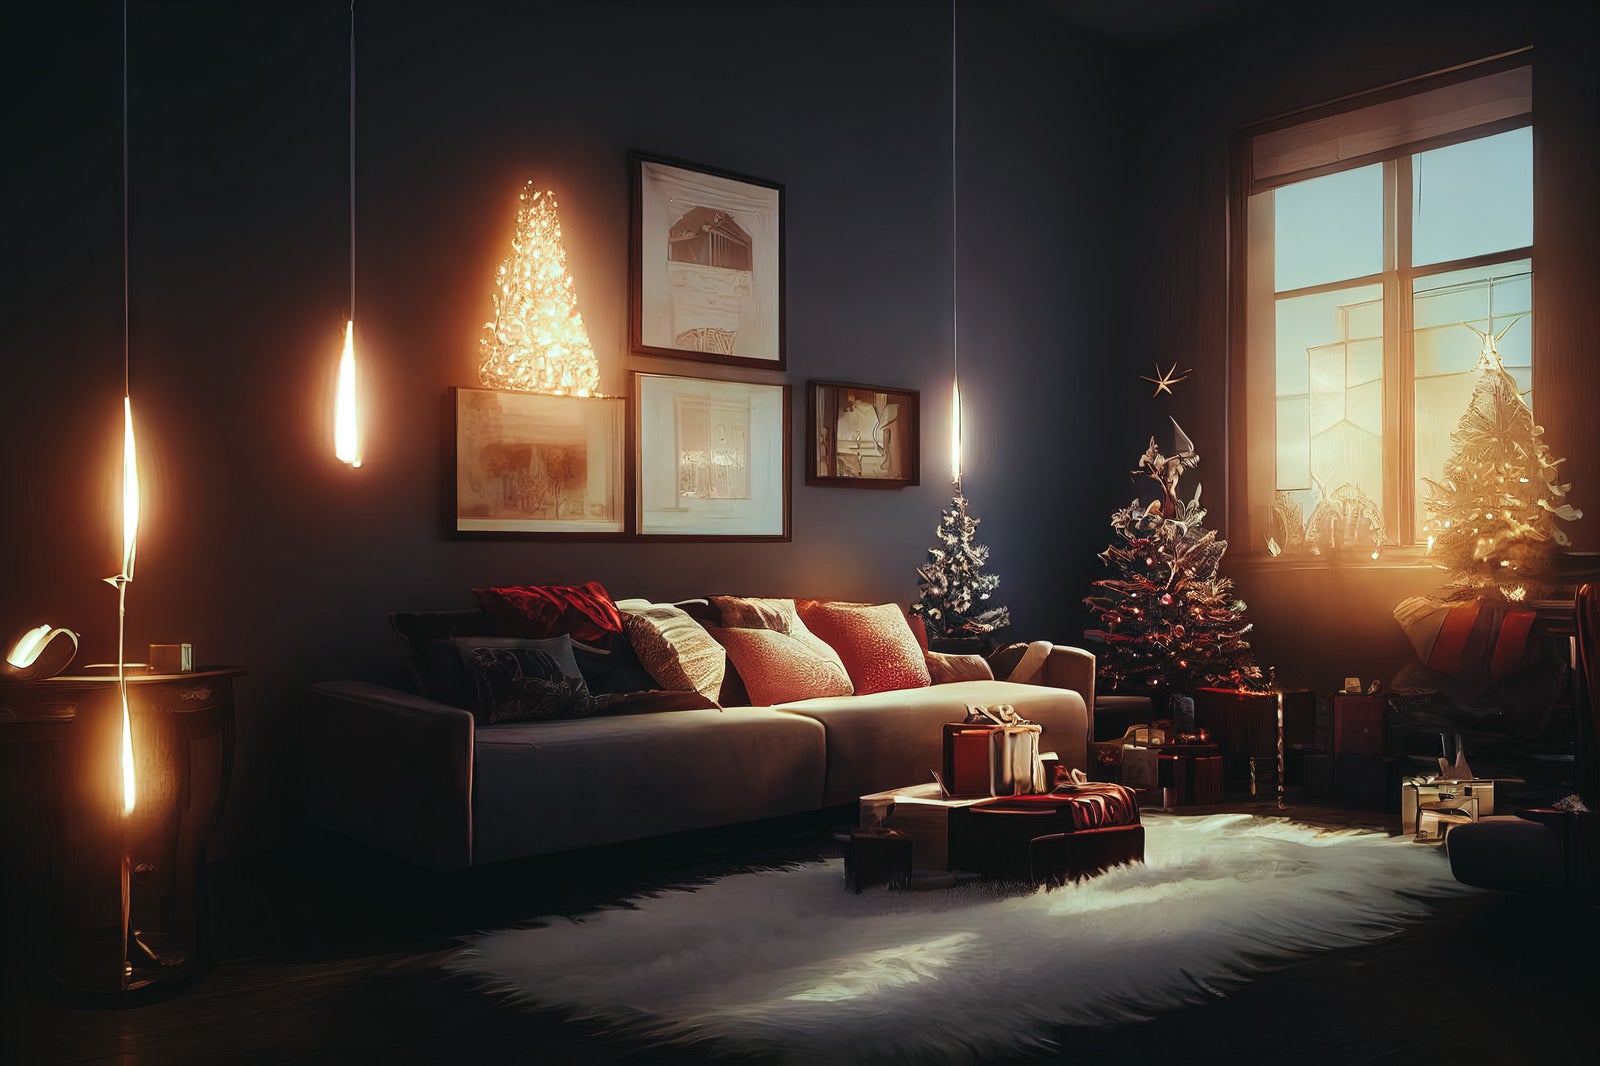 「キャンドルの明かりとクリスマスツリーのある広いリビング」の写真